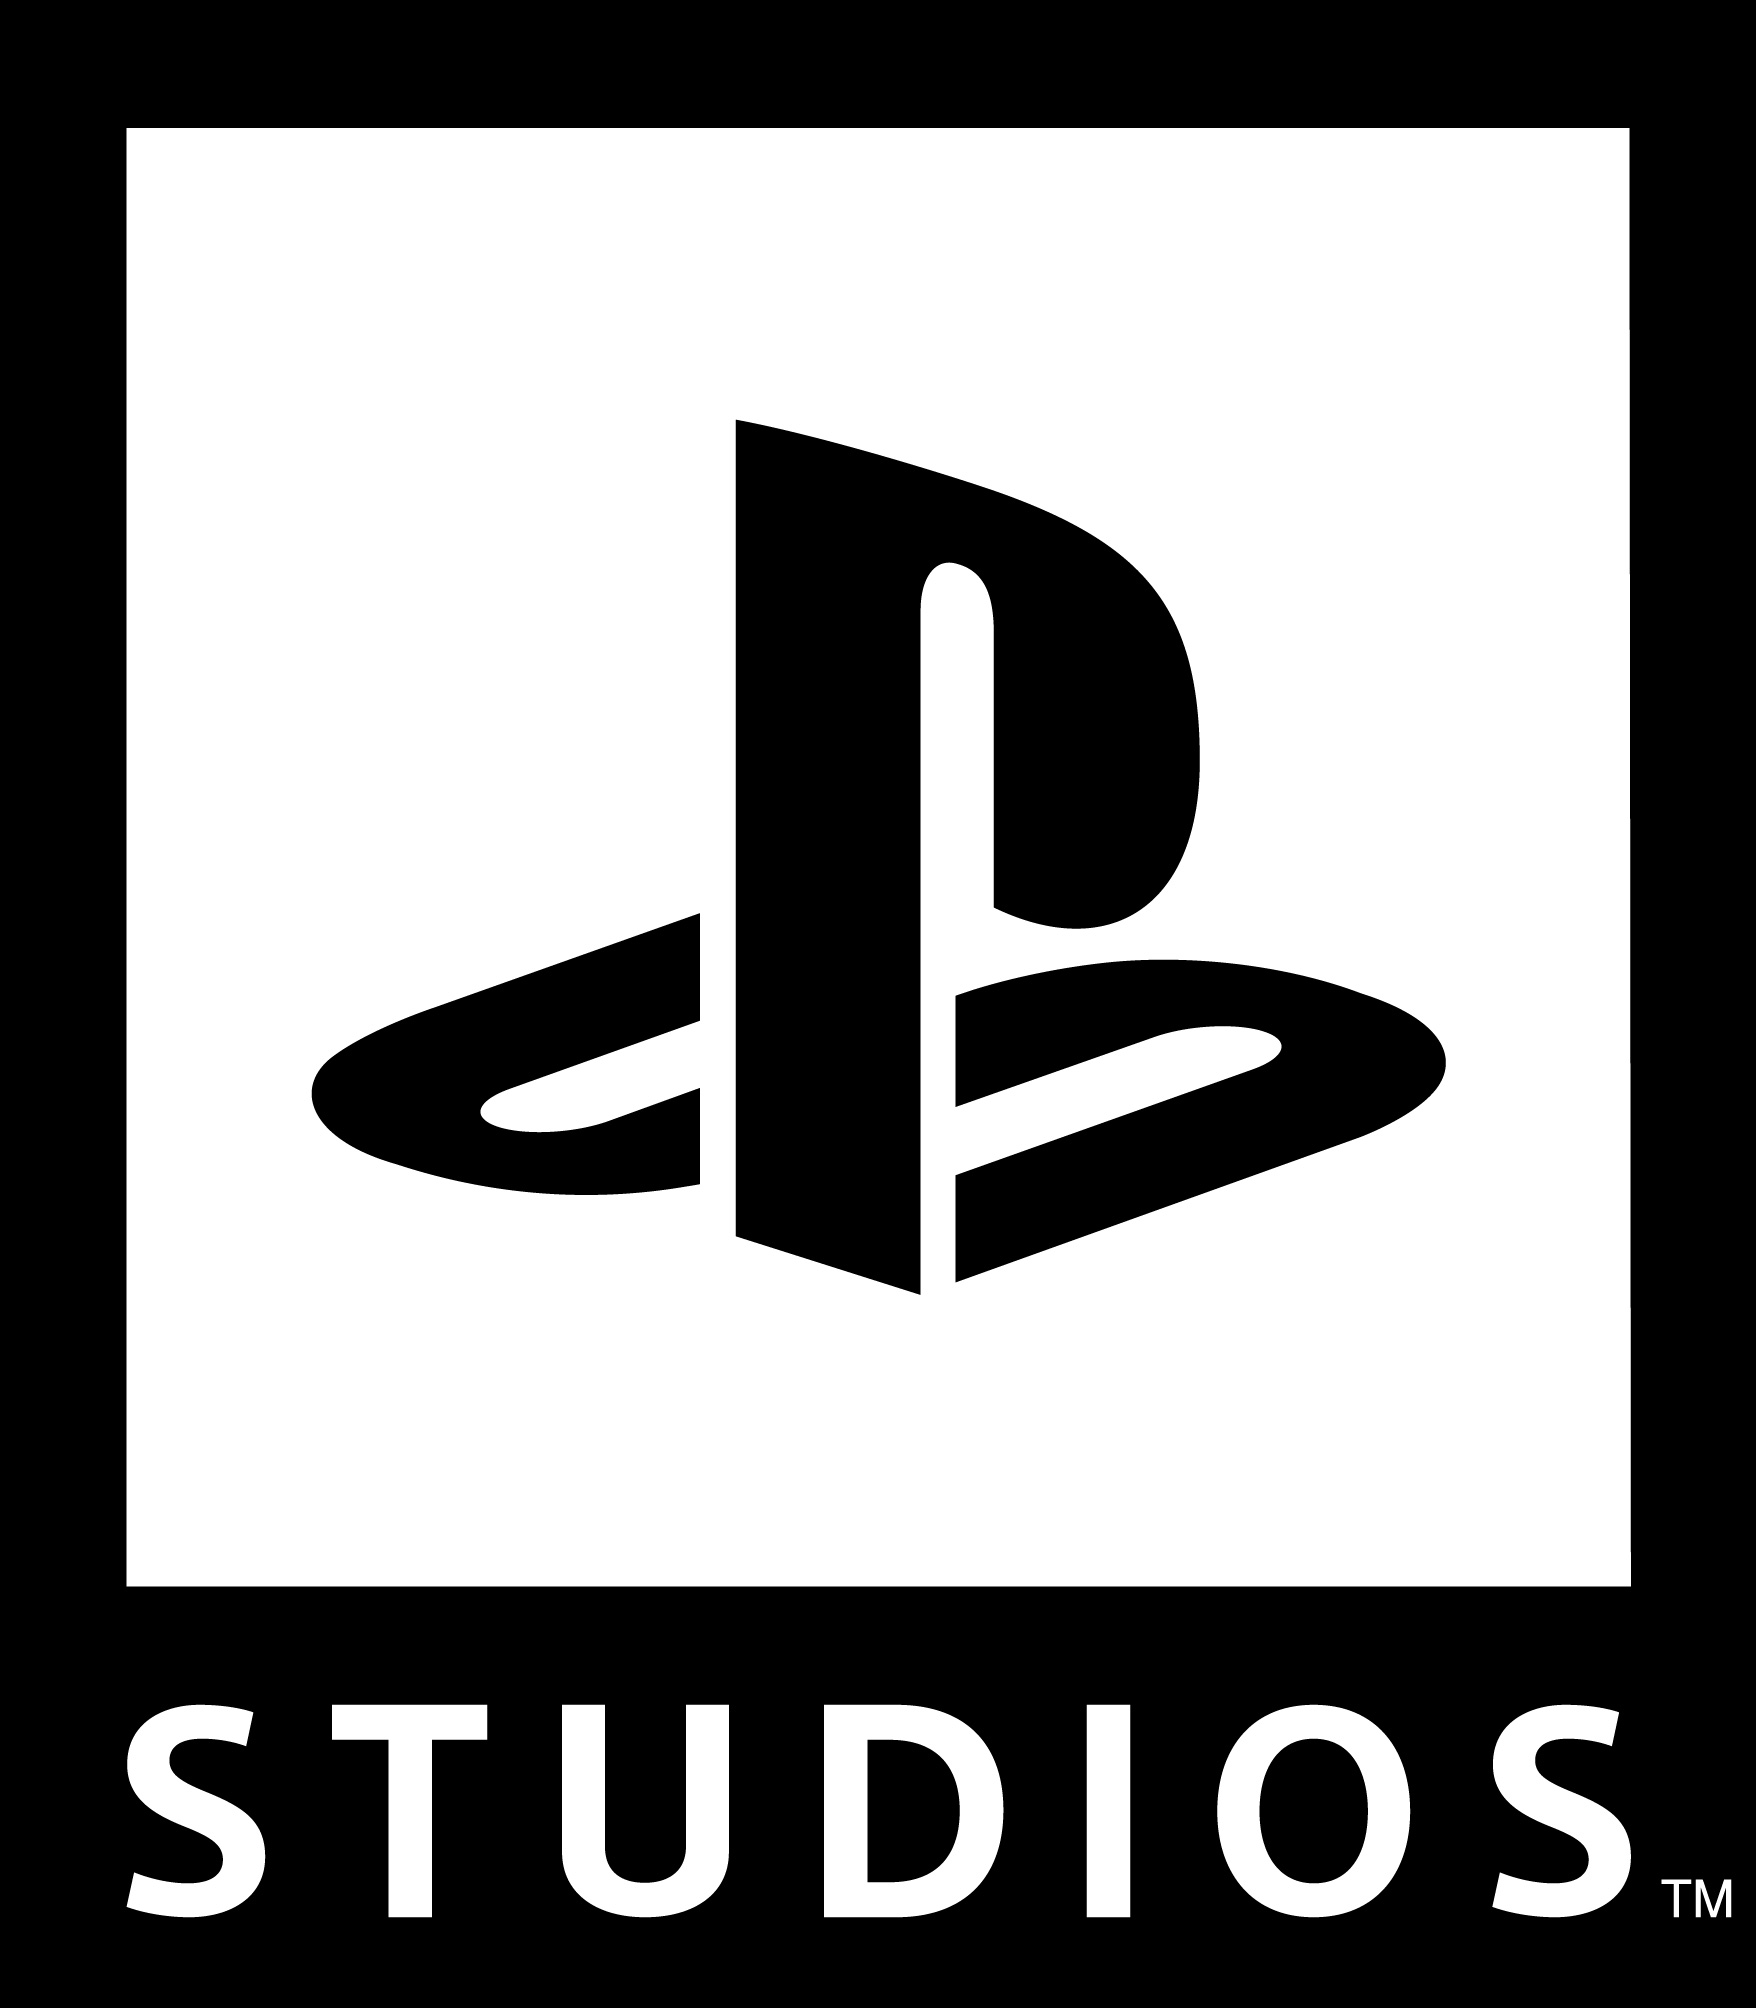 ソニー、『PlayStation Studios』ブランドを新設。オープニング動画ロゴ公開